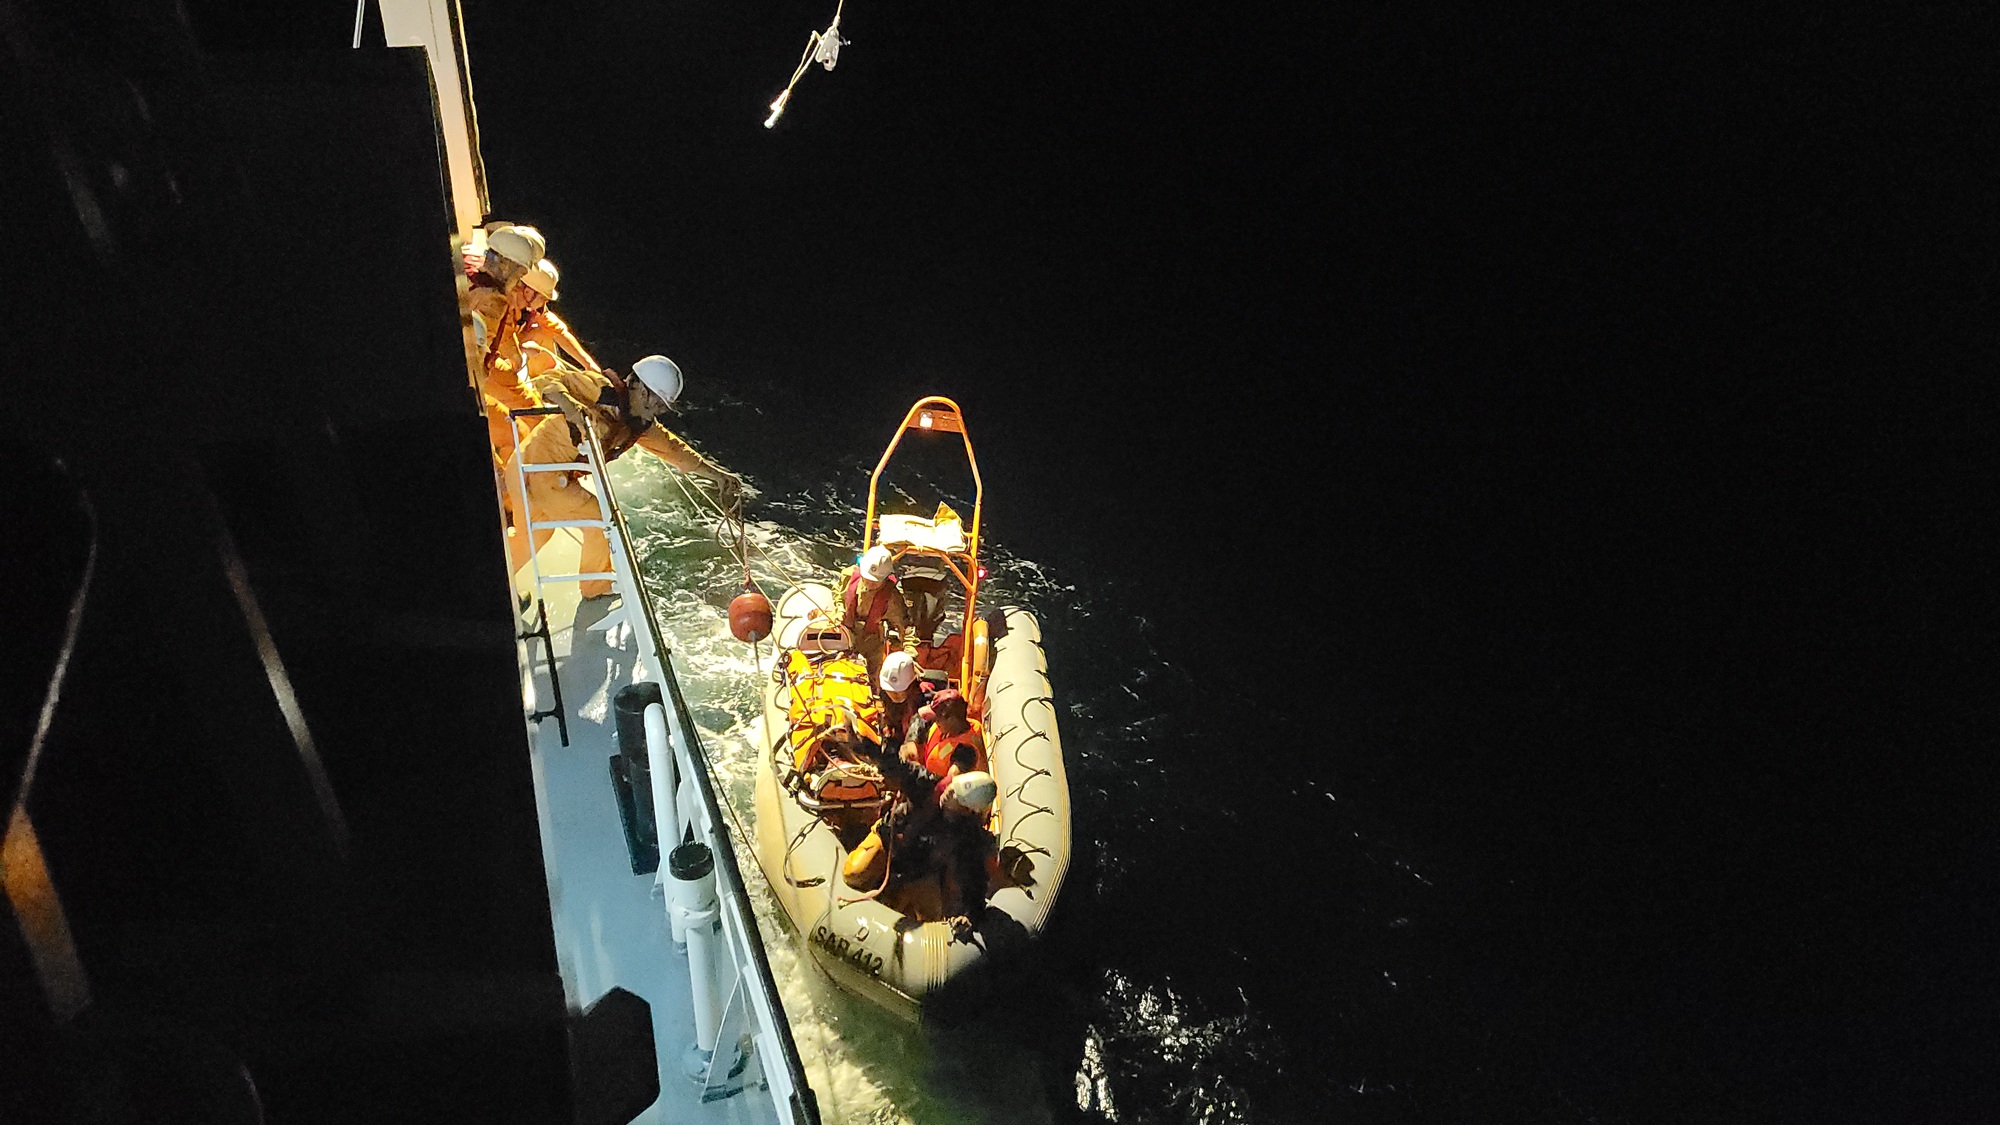 Cứu sống ngư dân 73 tuổi bị đột quỵ trở về từ quần đảo Hoàng Sa - Ảnh 1.